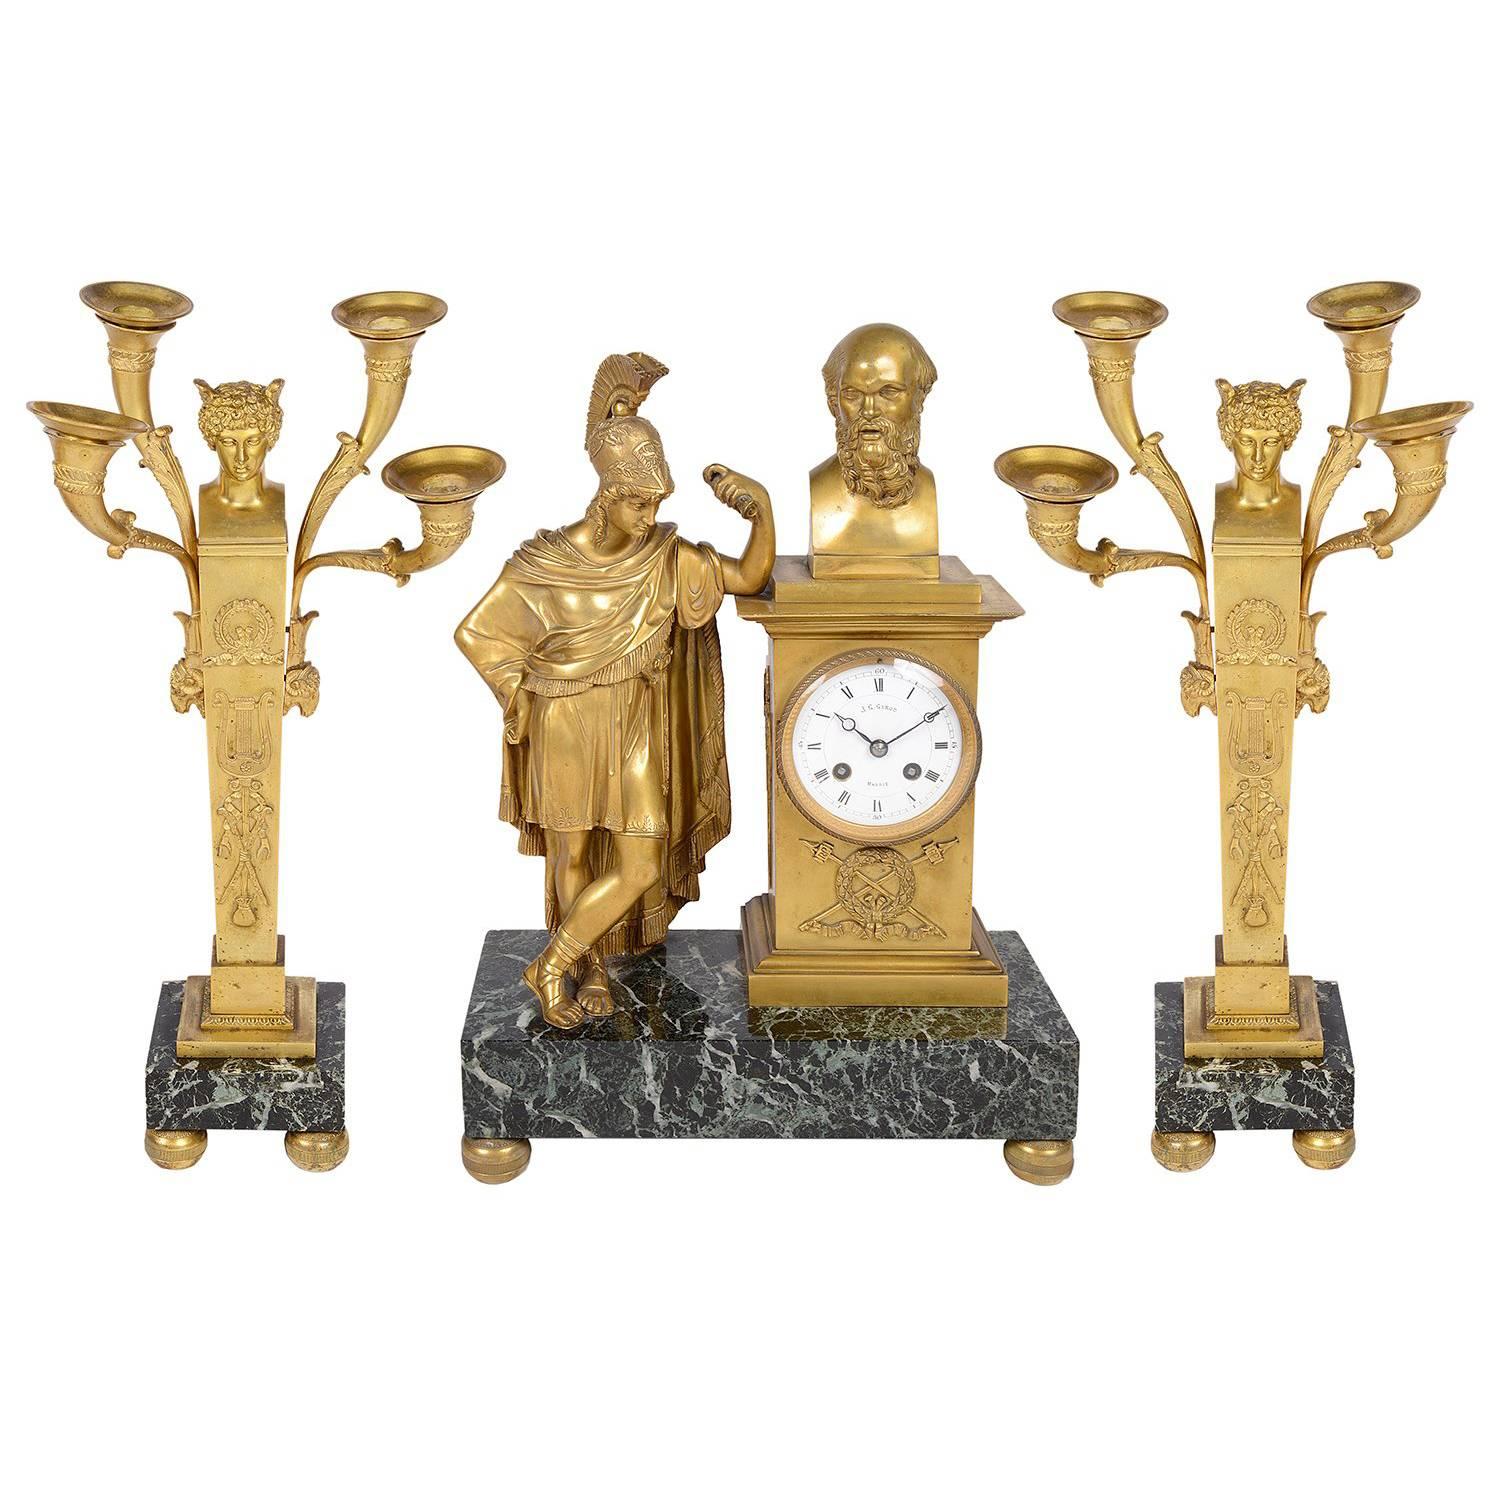 Französisches Uhren-Set aus dem 19. Jahrhundert mit römischem Zentrion und Kandelaber